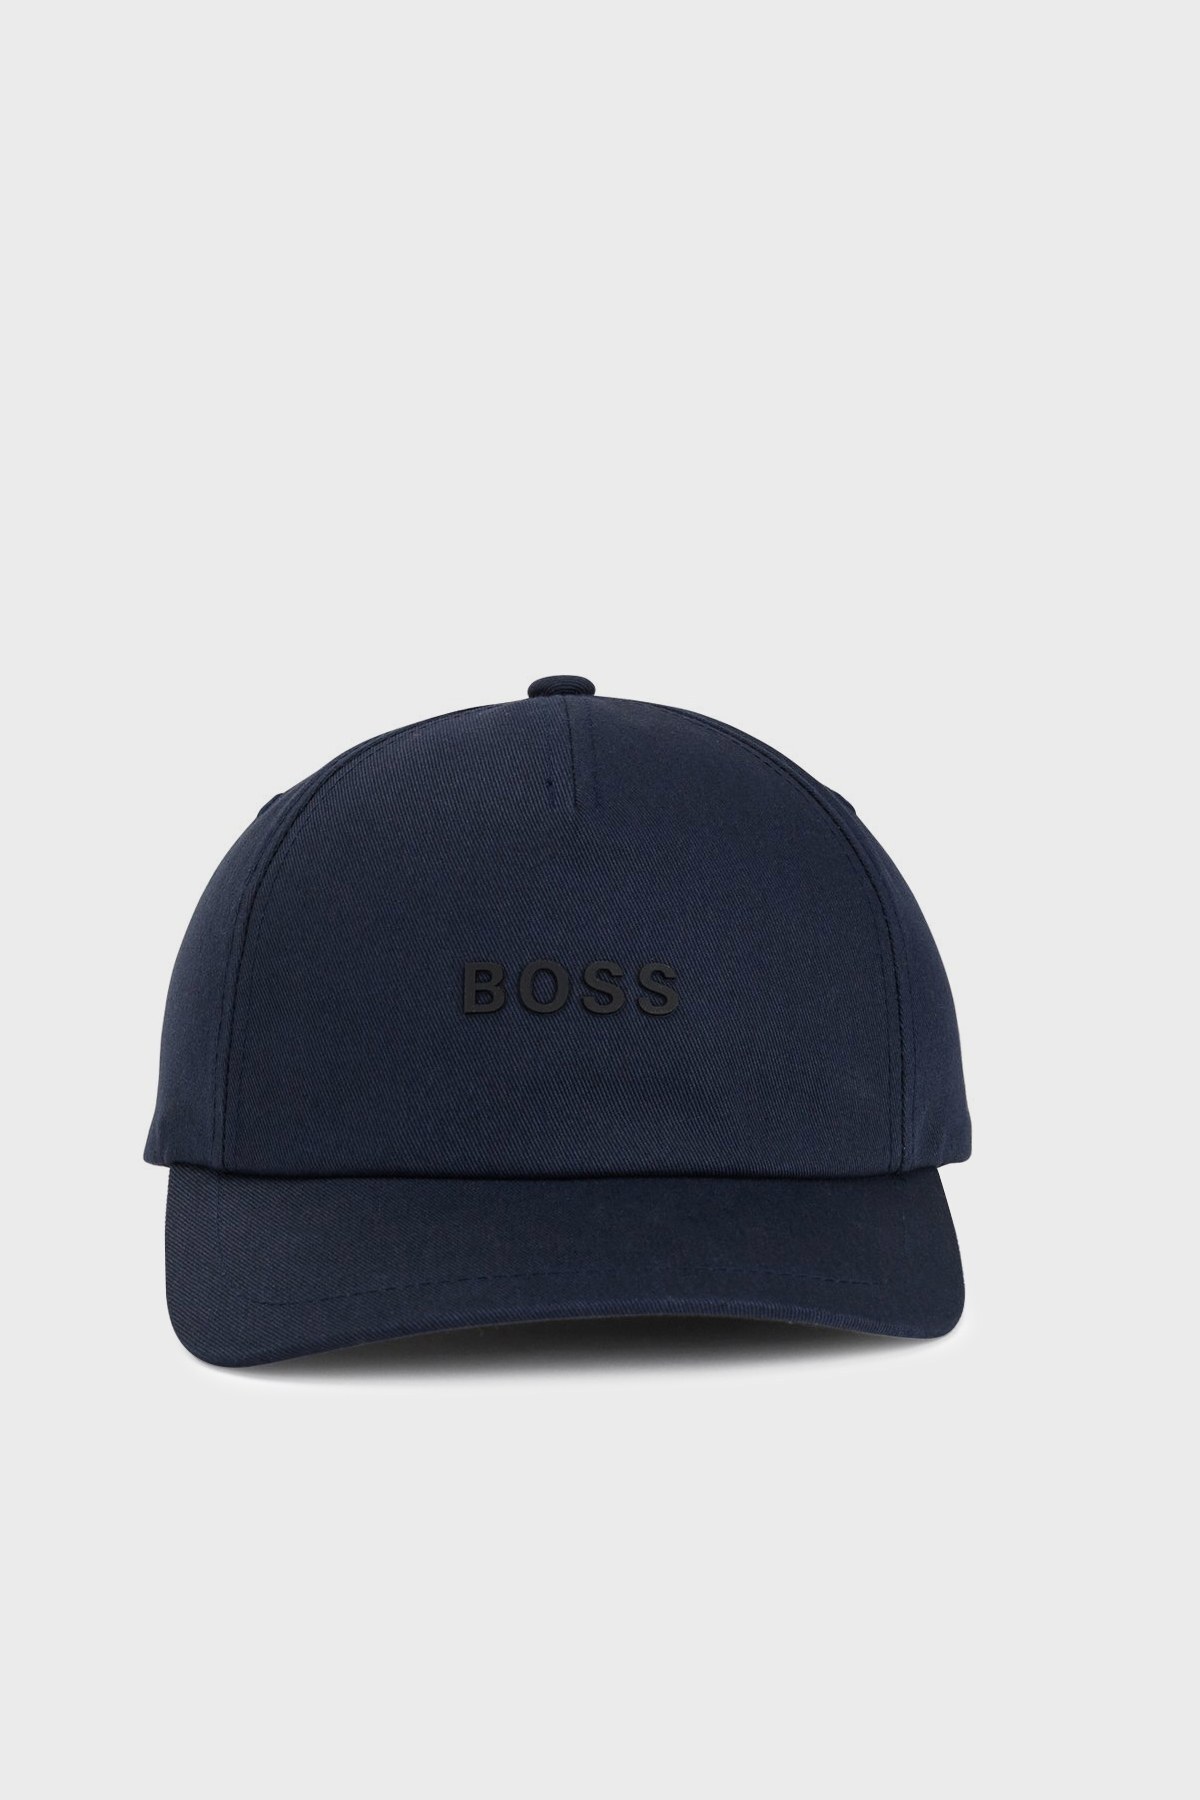 Boss Logo Detaylı Erkek Şapka 50462830 404 LACİVERT